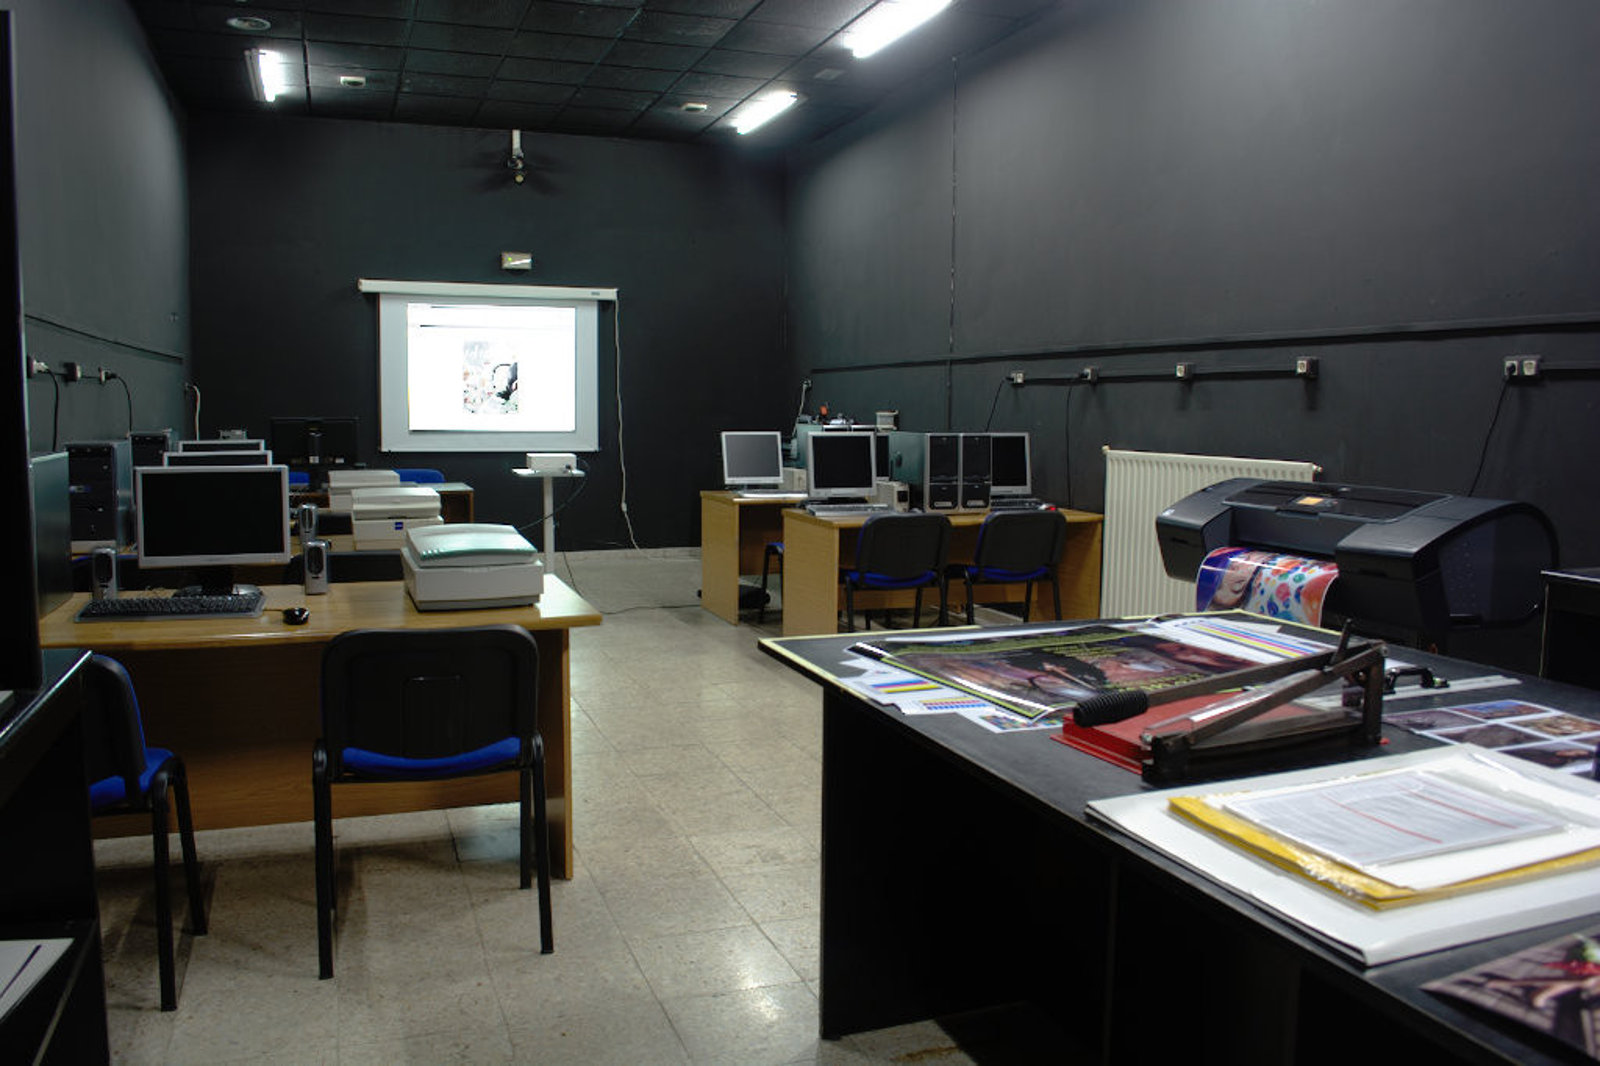 Escuela de Imagen y Sonido de Vigo EISV. Cabinas de prácticas para alumnos - Black Box - Sala negra de fotografía digital